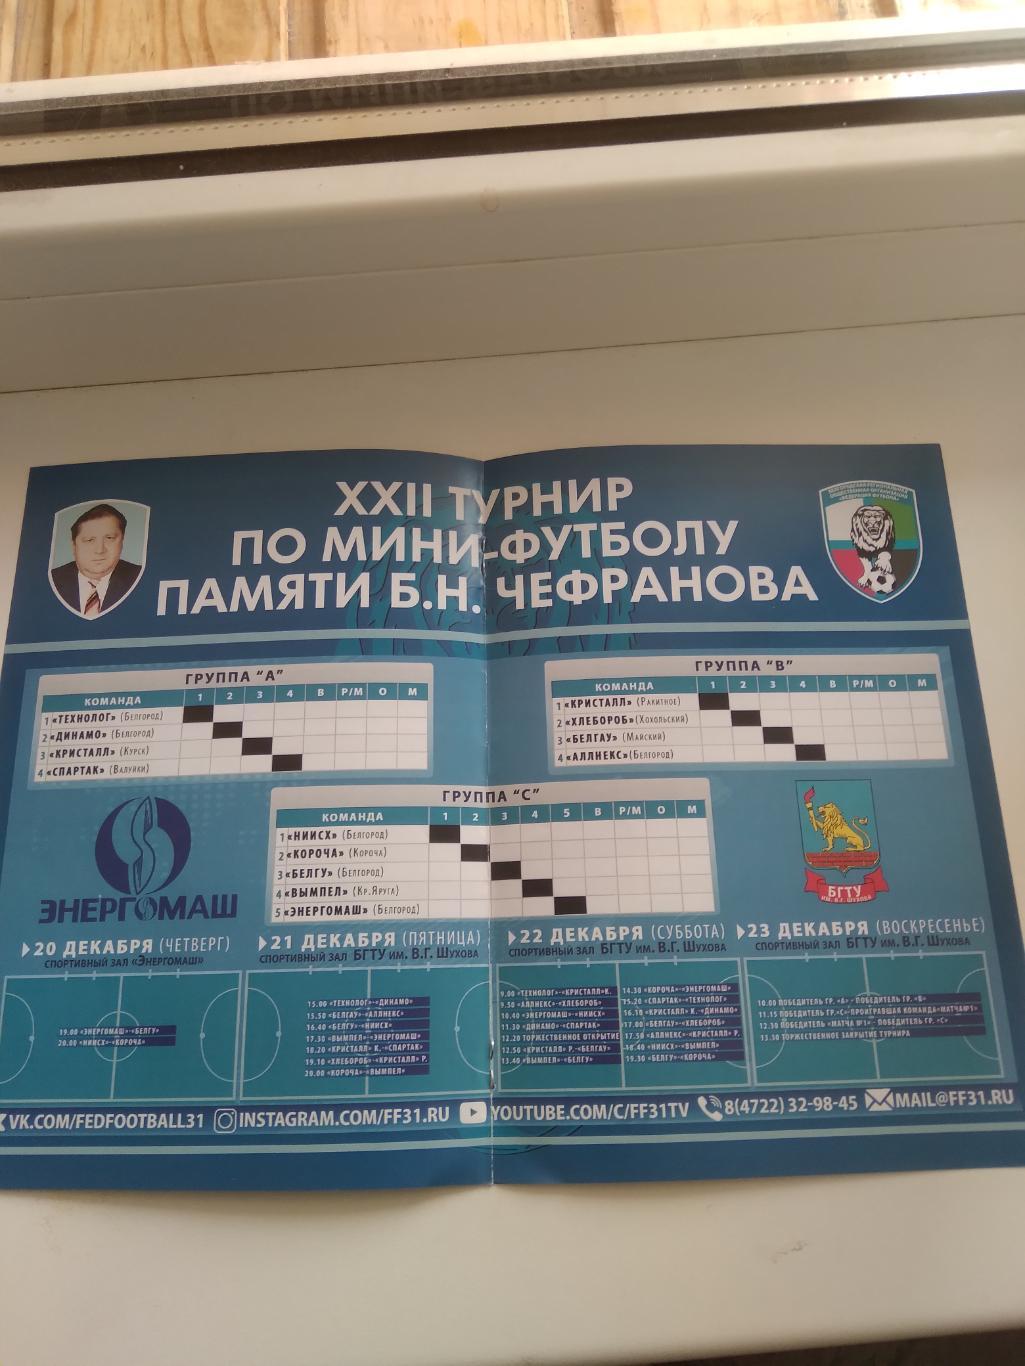 XXII ТУРНИР по мини-футболу памяти Б.Н ЧЕФРАНОВА 2018 Г. 1